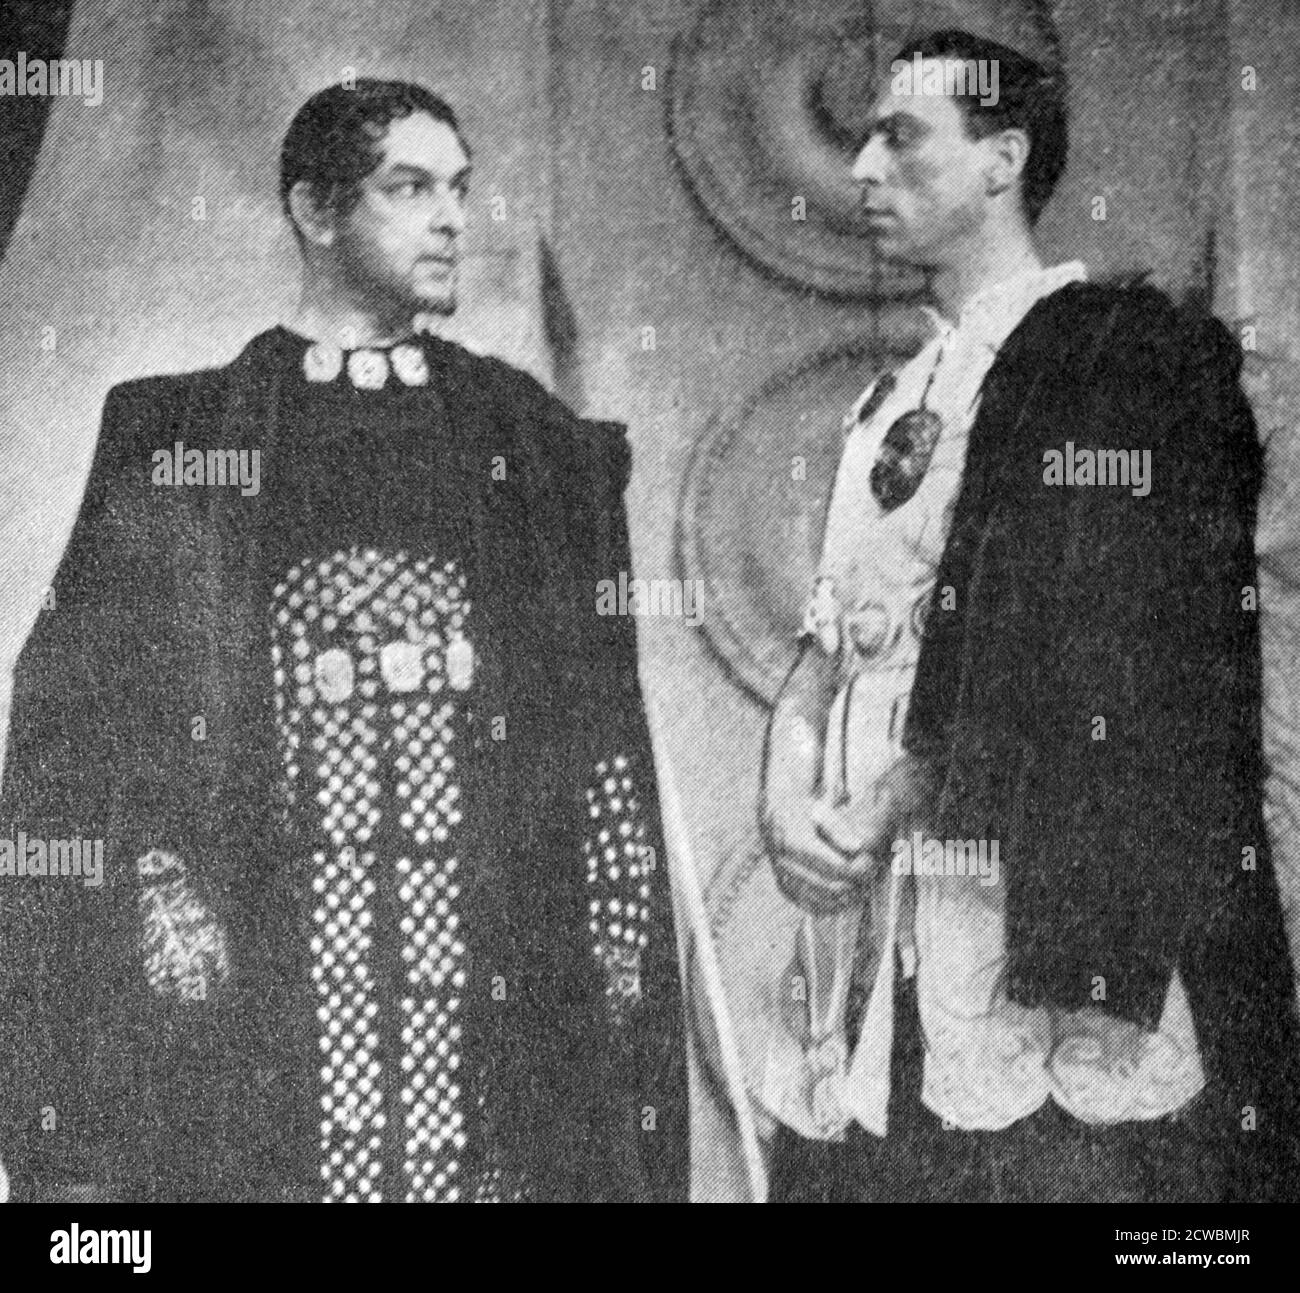 Fotografía en blanco y negro de grandes actores franceses antes de la Segunda Guerra Mundial; Louis Jouvet (1887-1951) y Jean Renoir (1894-1979) en "la Guerra de Troya no tendrá lugar" por Jean Giraudoux (1887-1951). Foto de stock